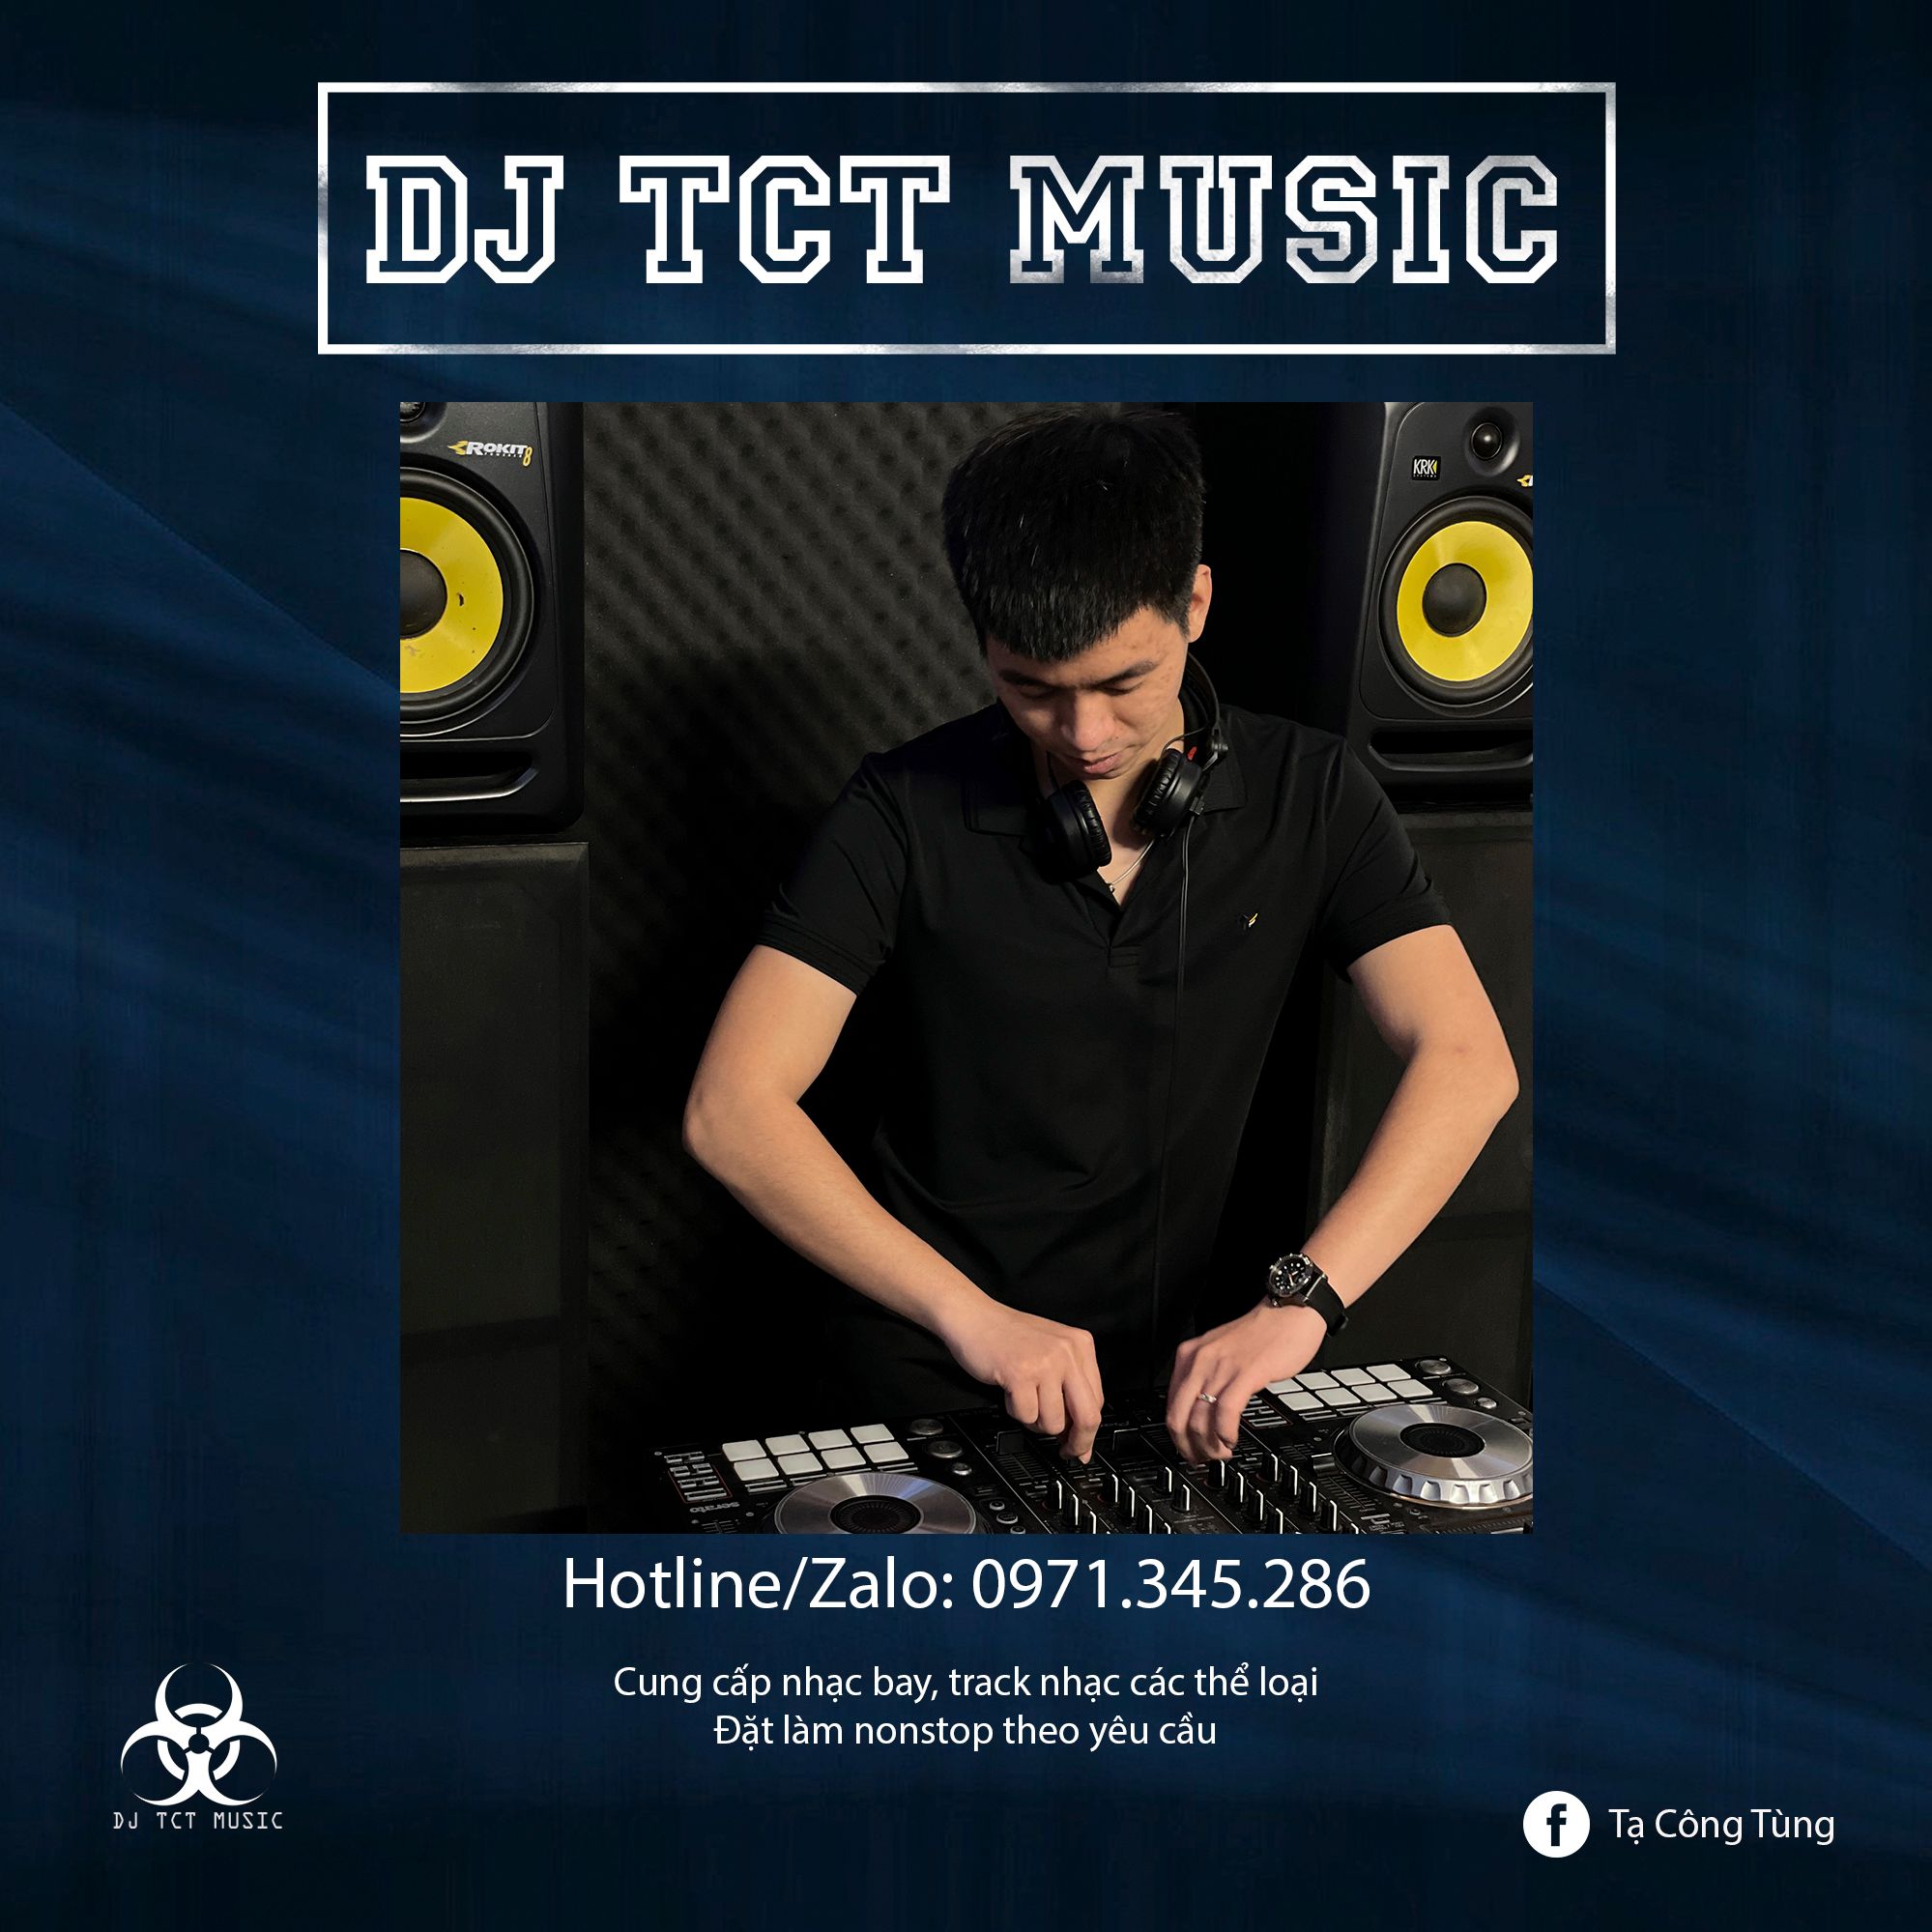 Hent HÀNG TRÔI KE 2022 _ DJ TCT MUSIC 0971345286 _ NONSTOP BAY PHÒNG GIỌT NƯỚC CHẢY DỊU ÊM